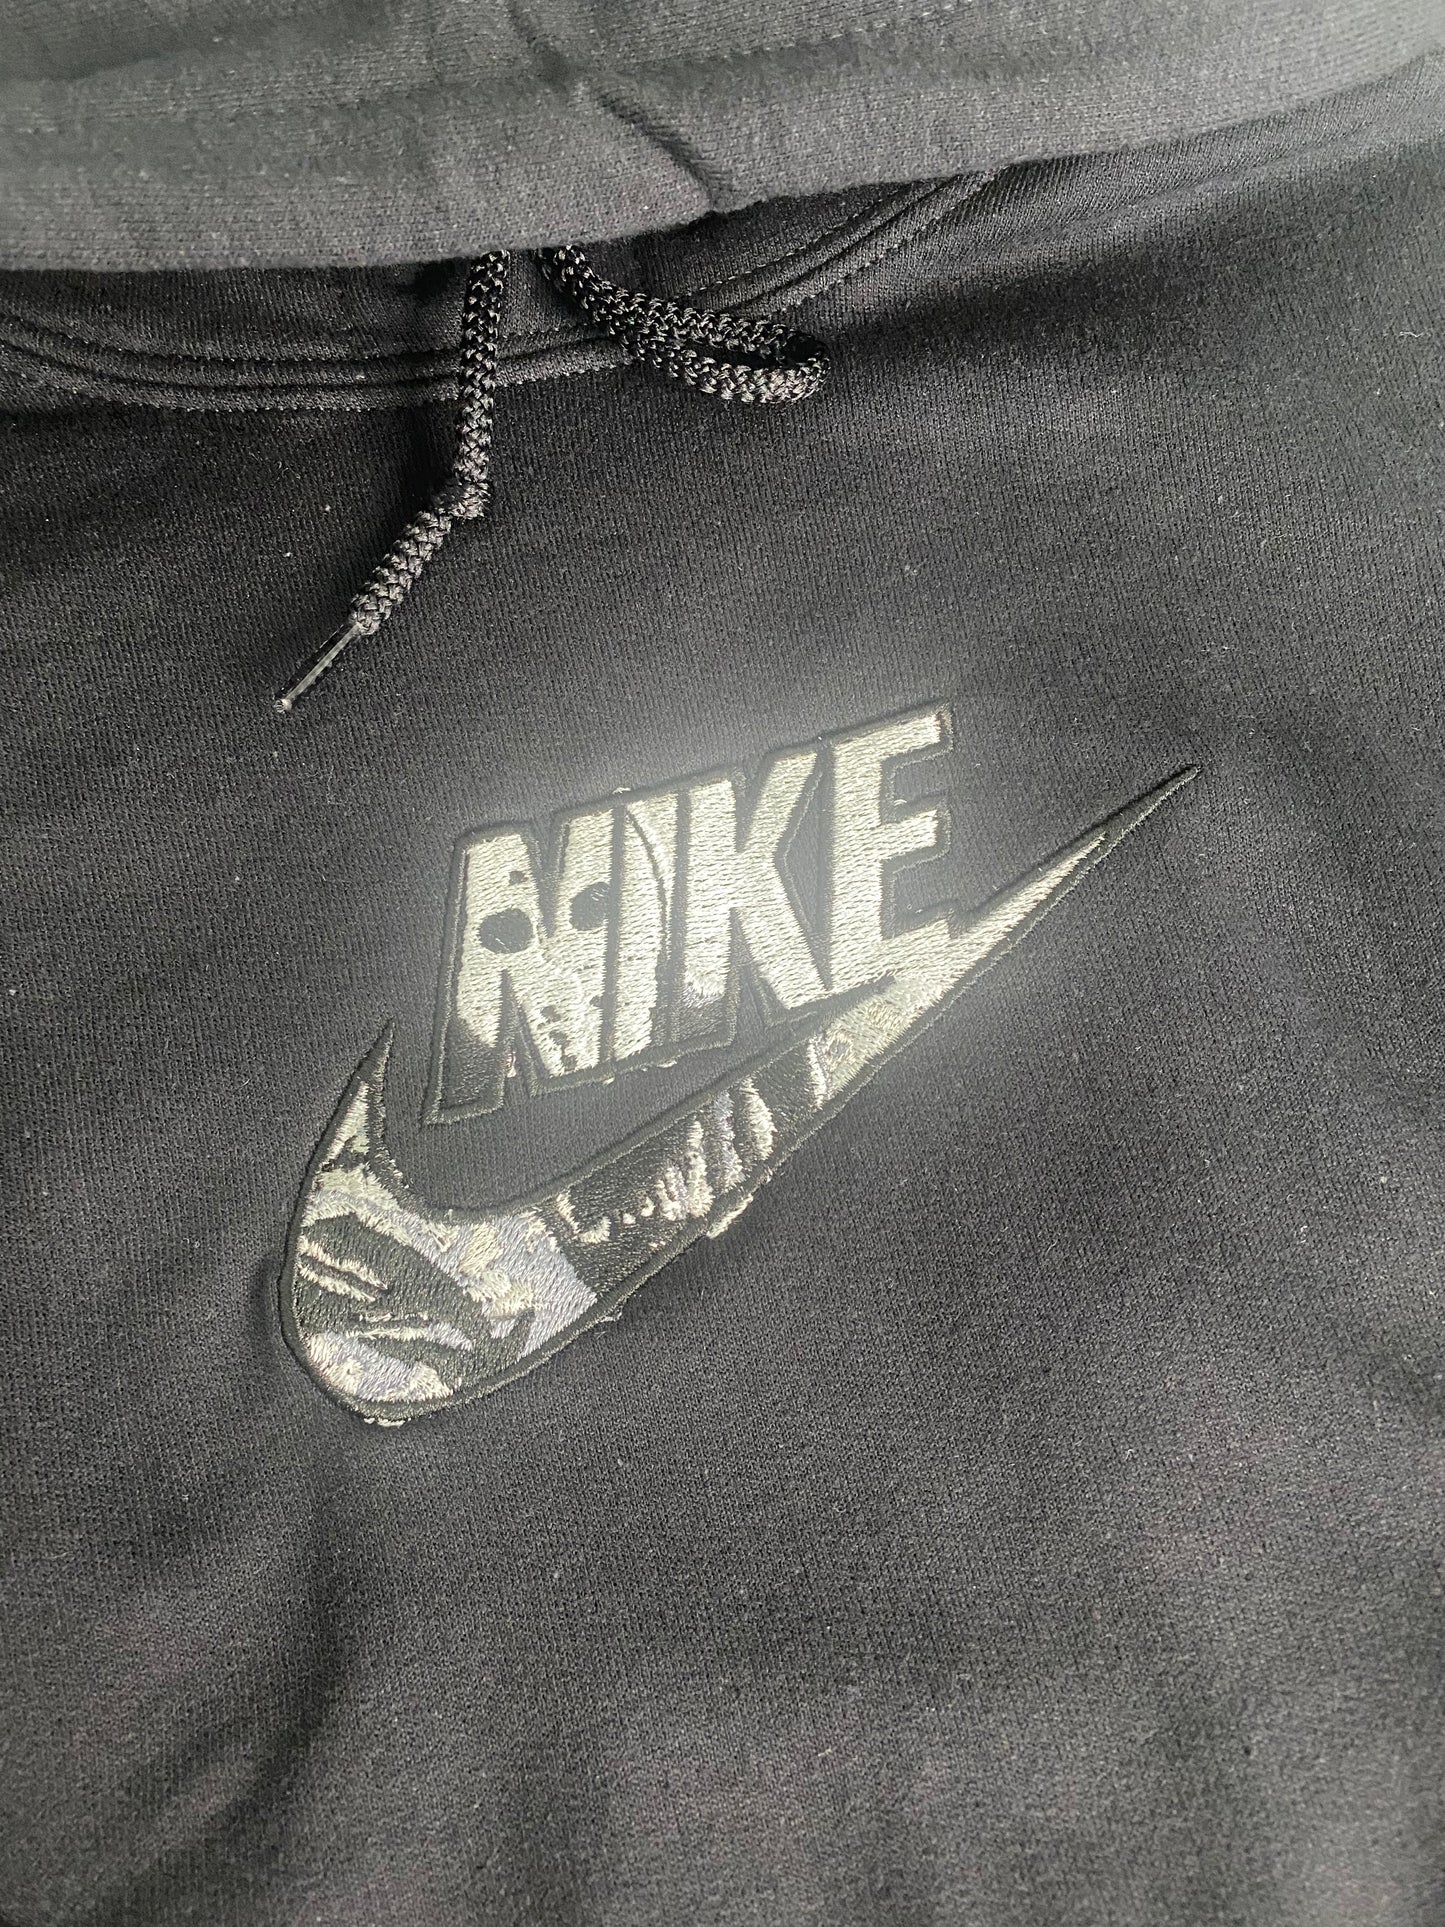 Kanye embroider hoodie